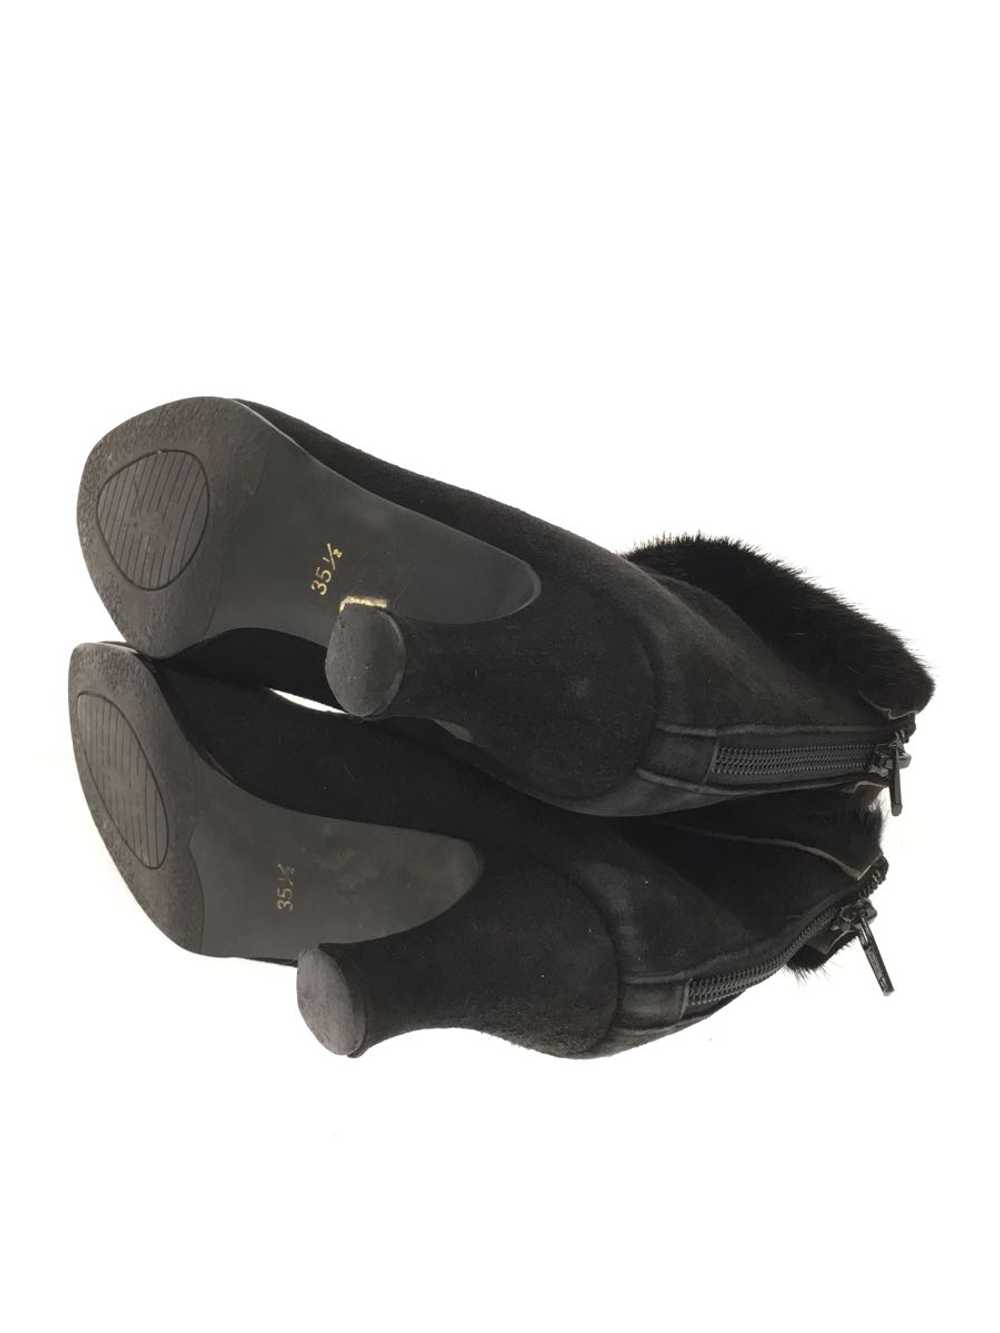 Yves Saint Laurent Boots/35.5/Blk/Suede Shoes Bb3… - image 3